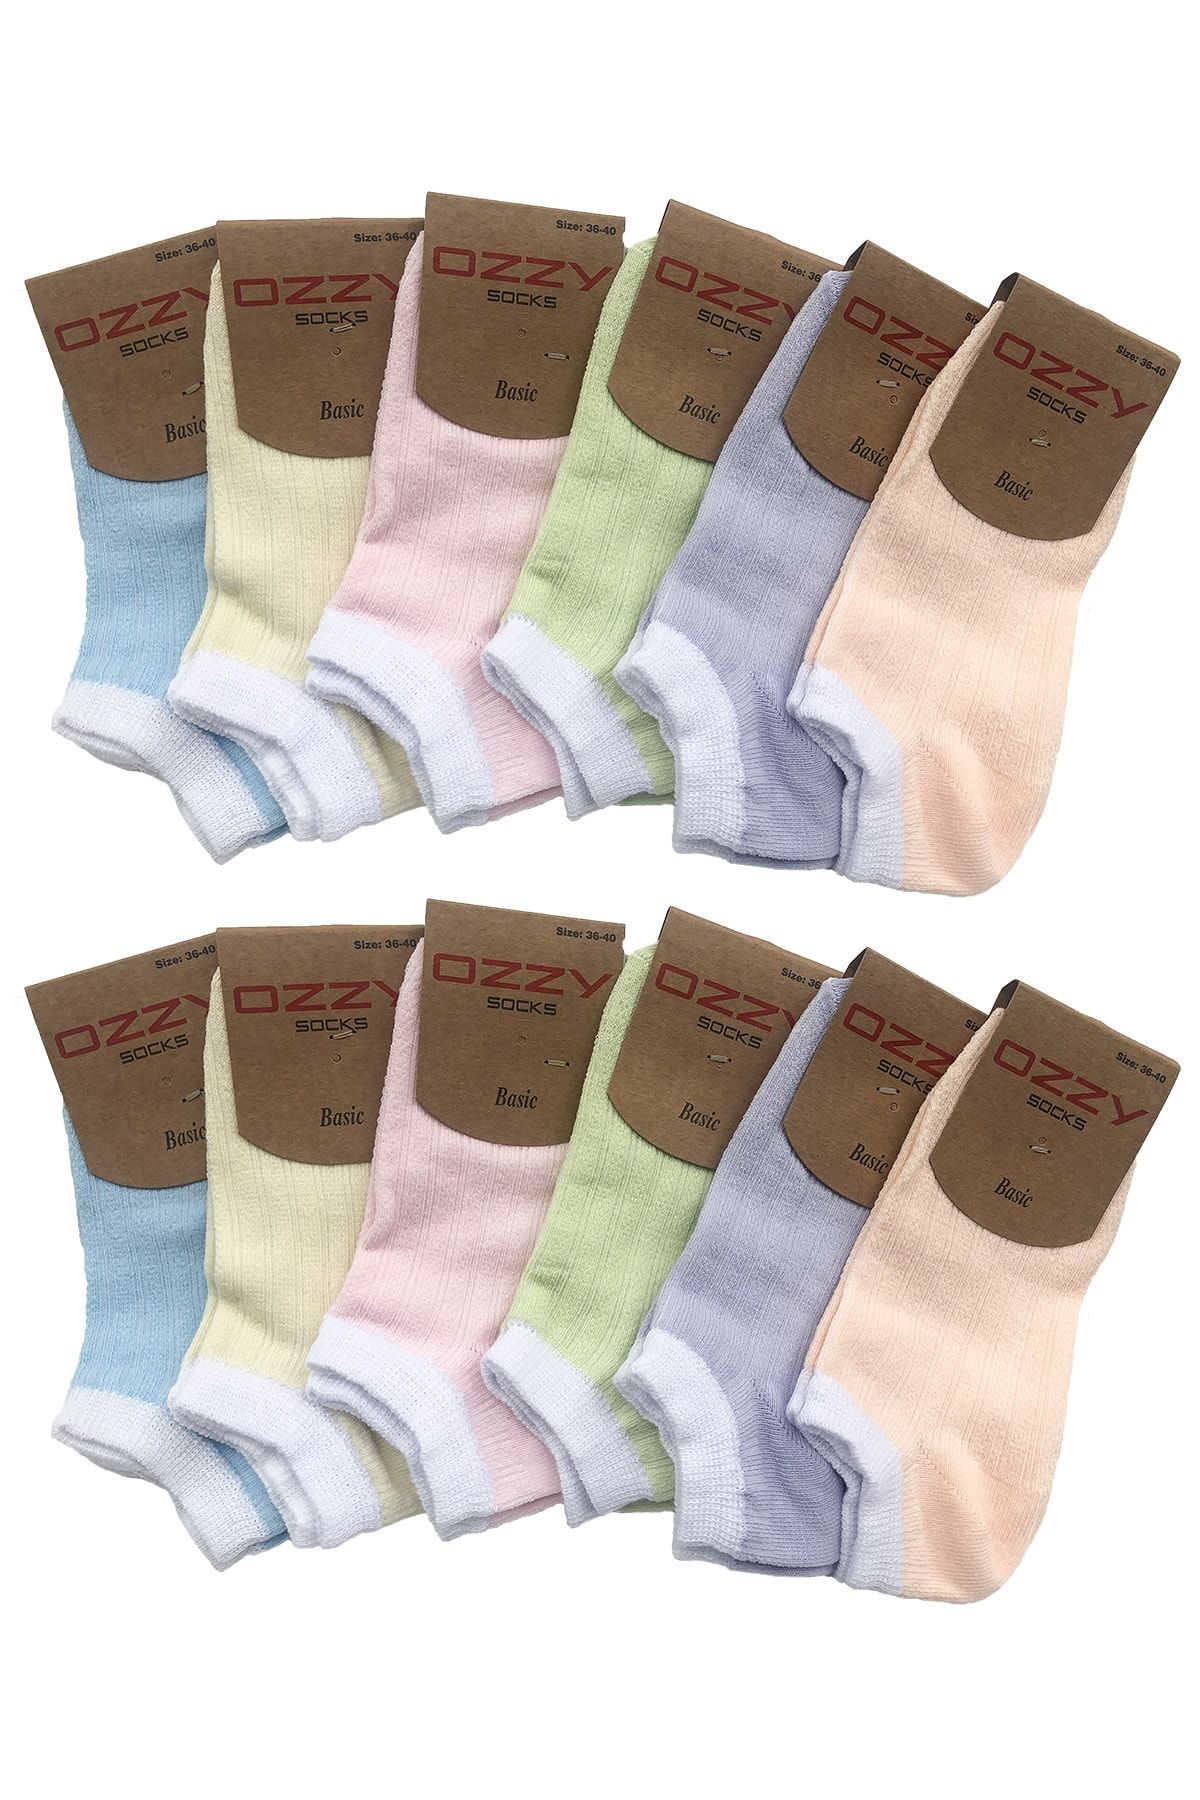 Ozzy Socks 12 Çift Pamuklu Kadın Patik Çorap Yazlık Dayanıklı Topuk Ve Burun Soft Renkler